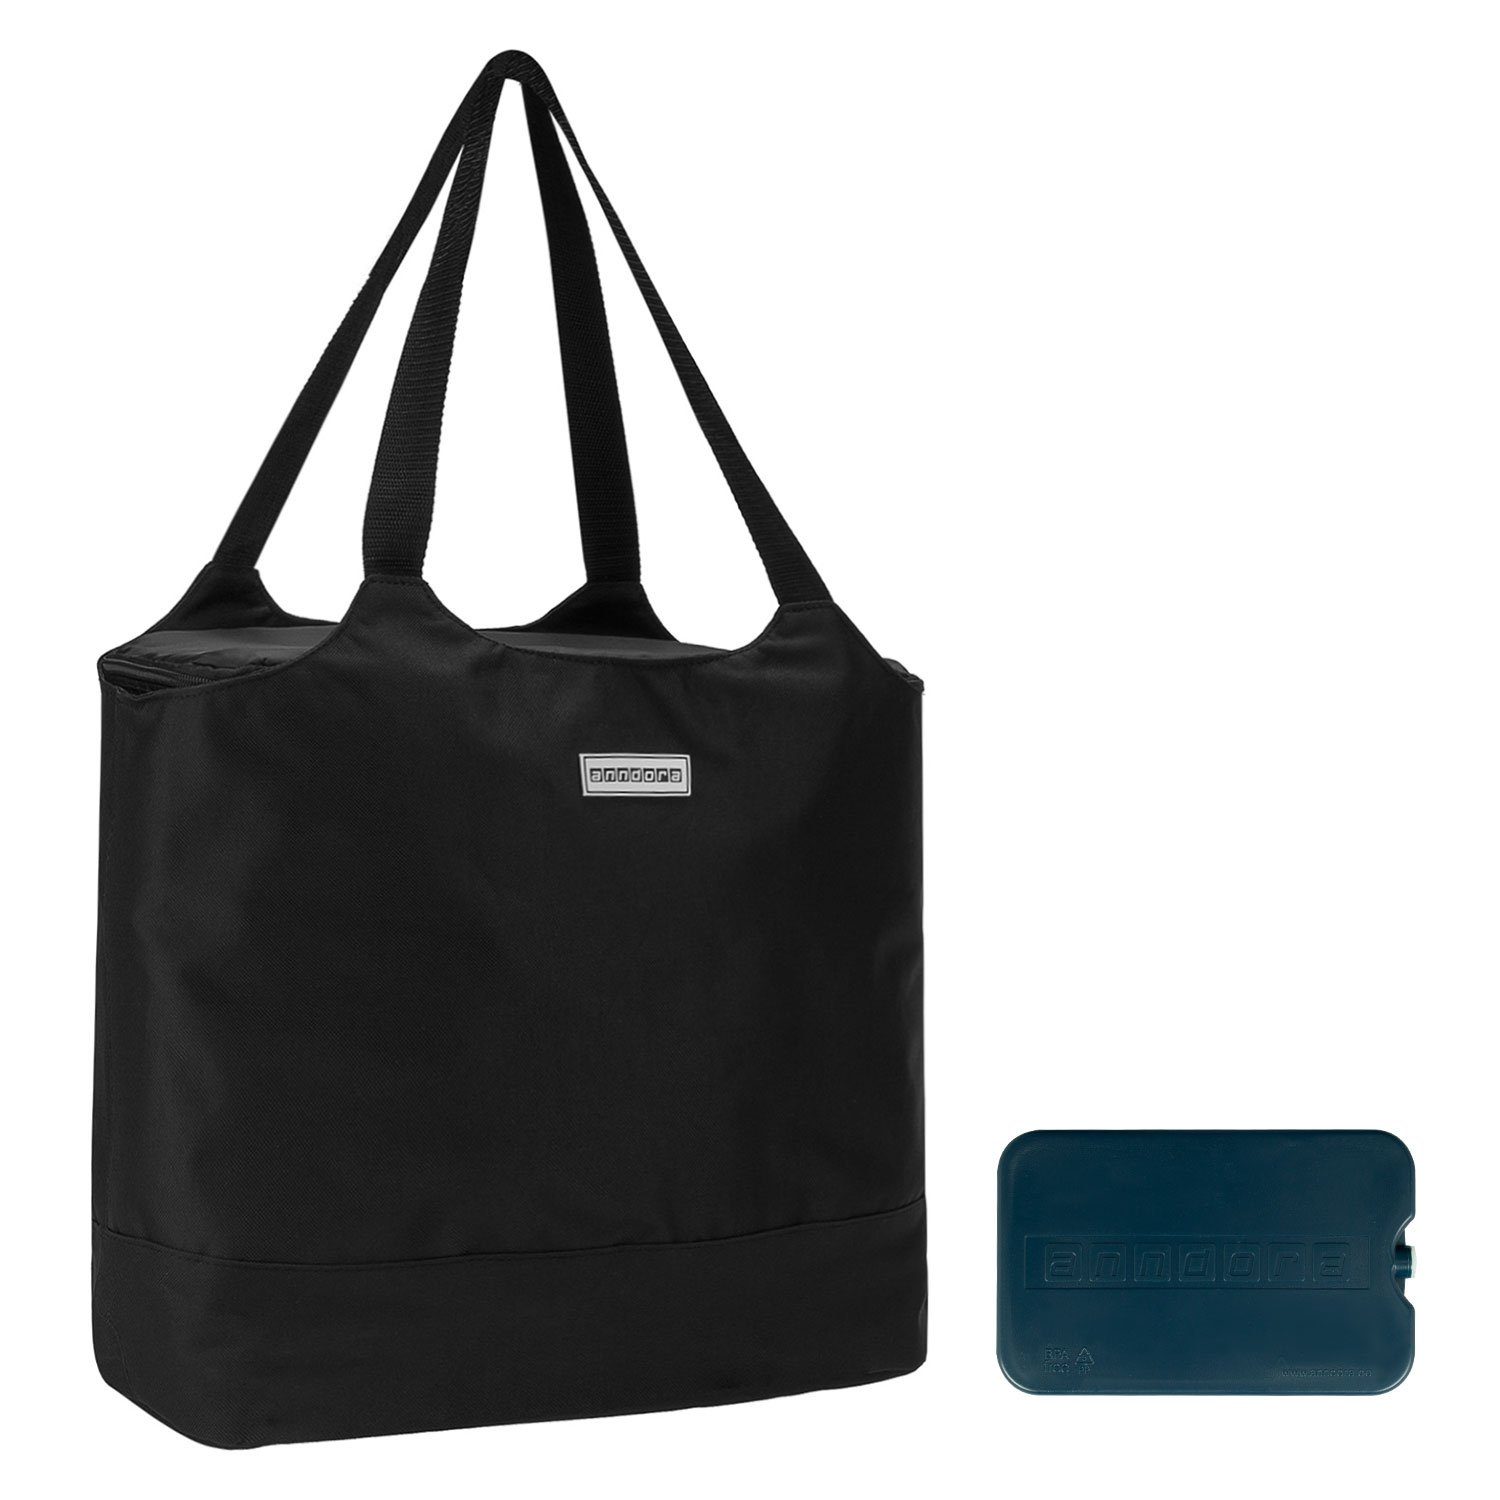 anndora Picknickkorb 2 in 1 Einkaufstasche + Kühltasche + Kühlakku - Design zur Auswahl schwarz